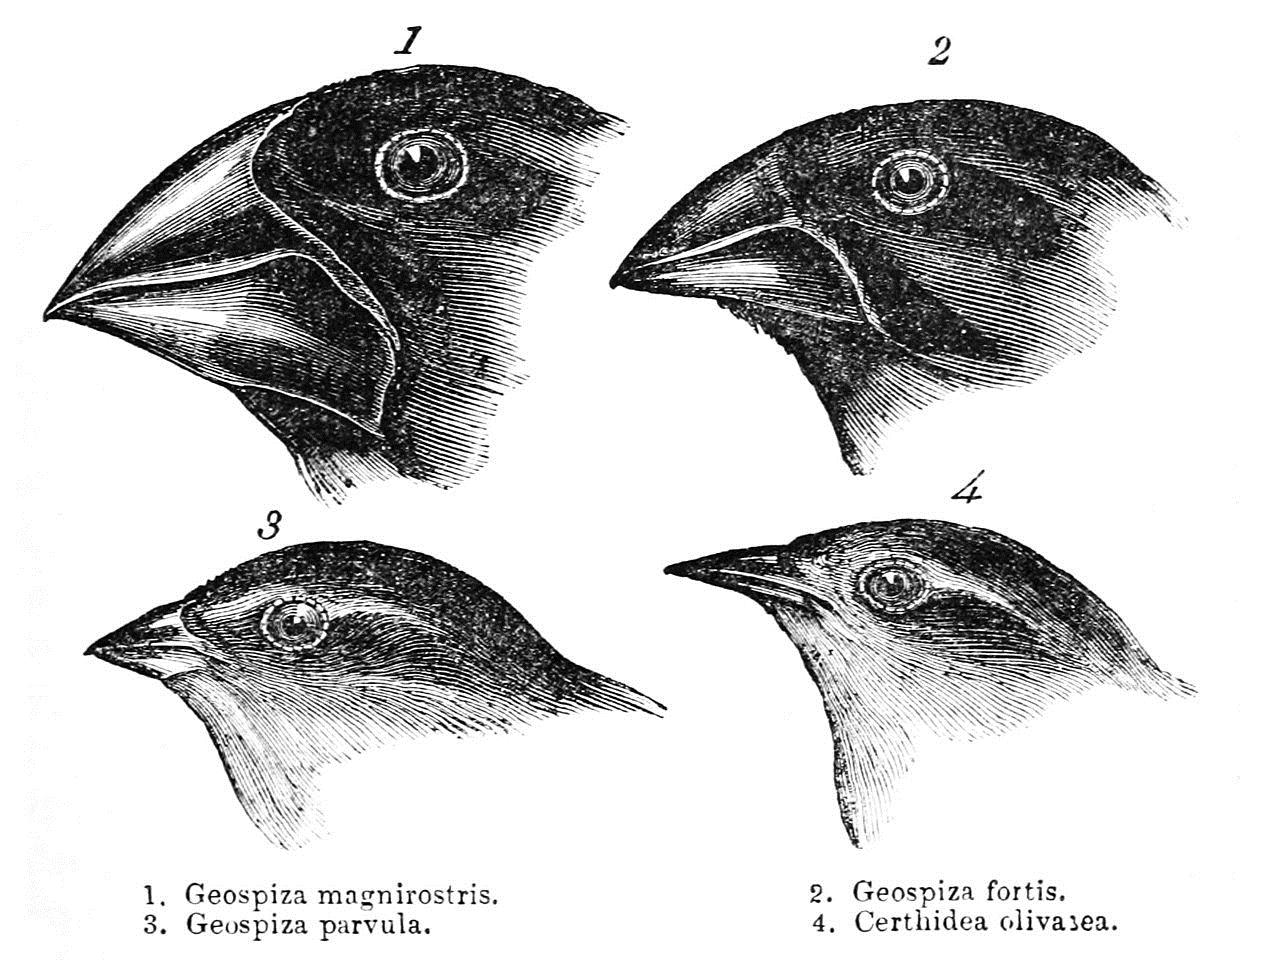 Darwin finches